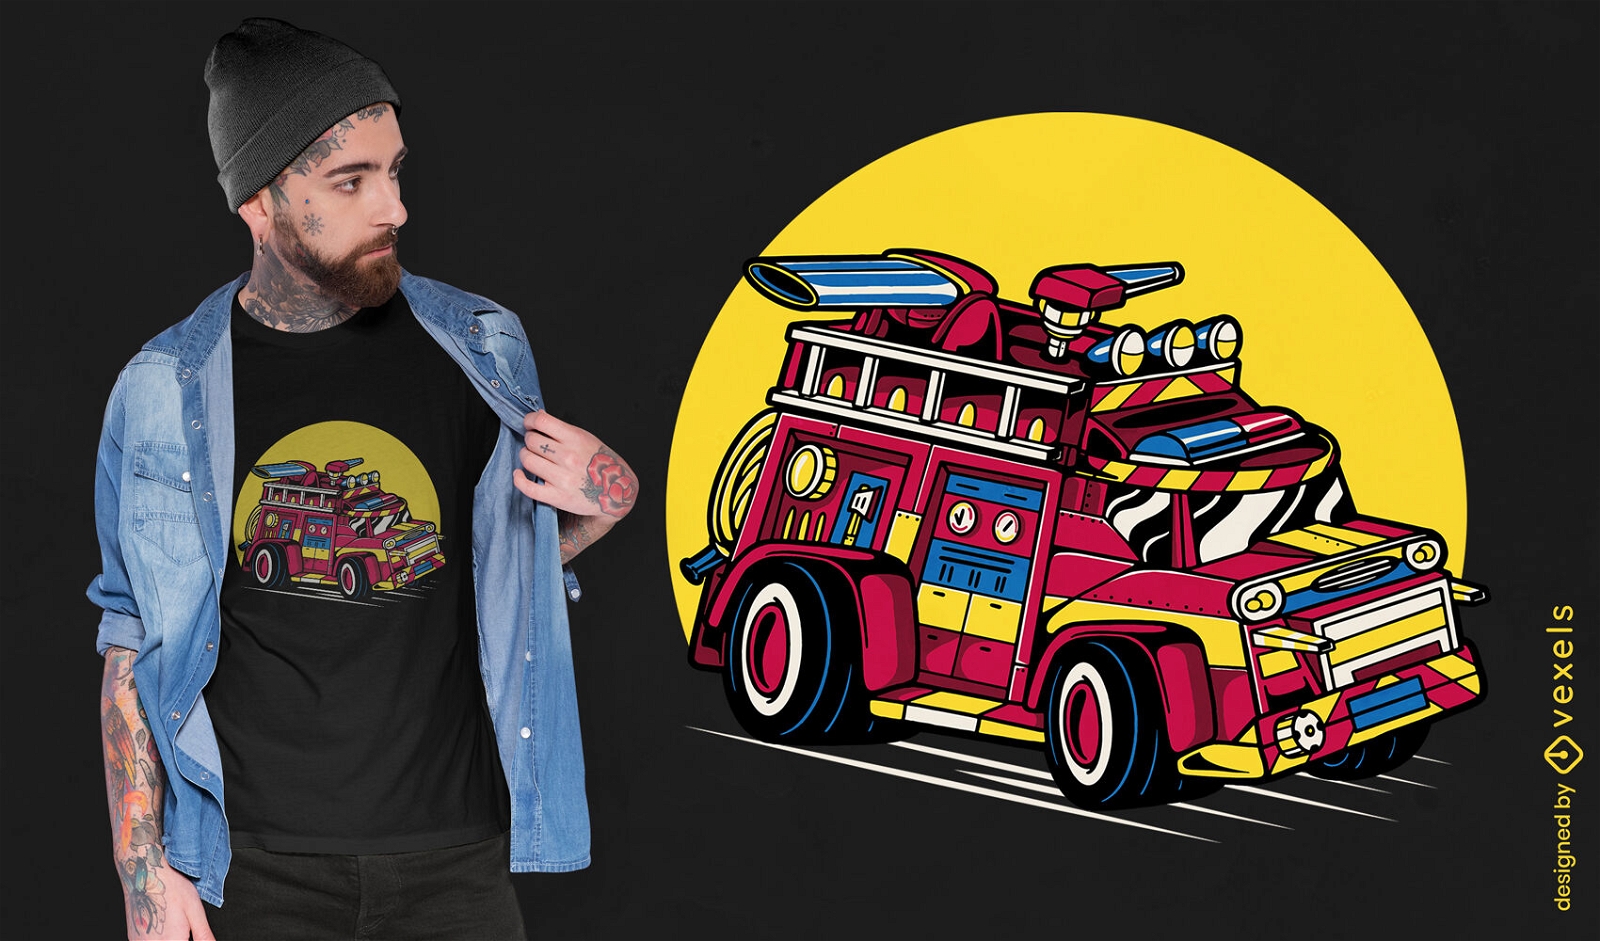 Firetruck racing through street t-shirt design